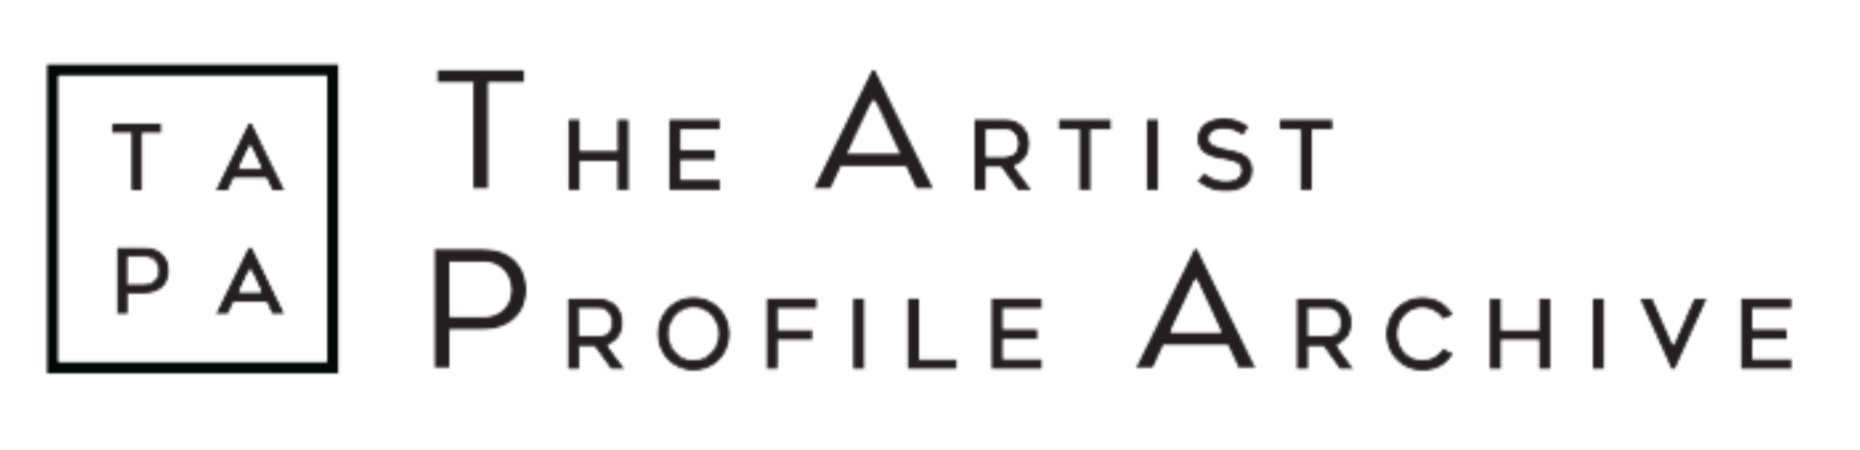 The Artist Profile Archive